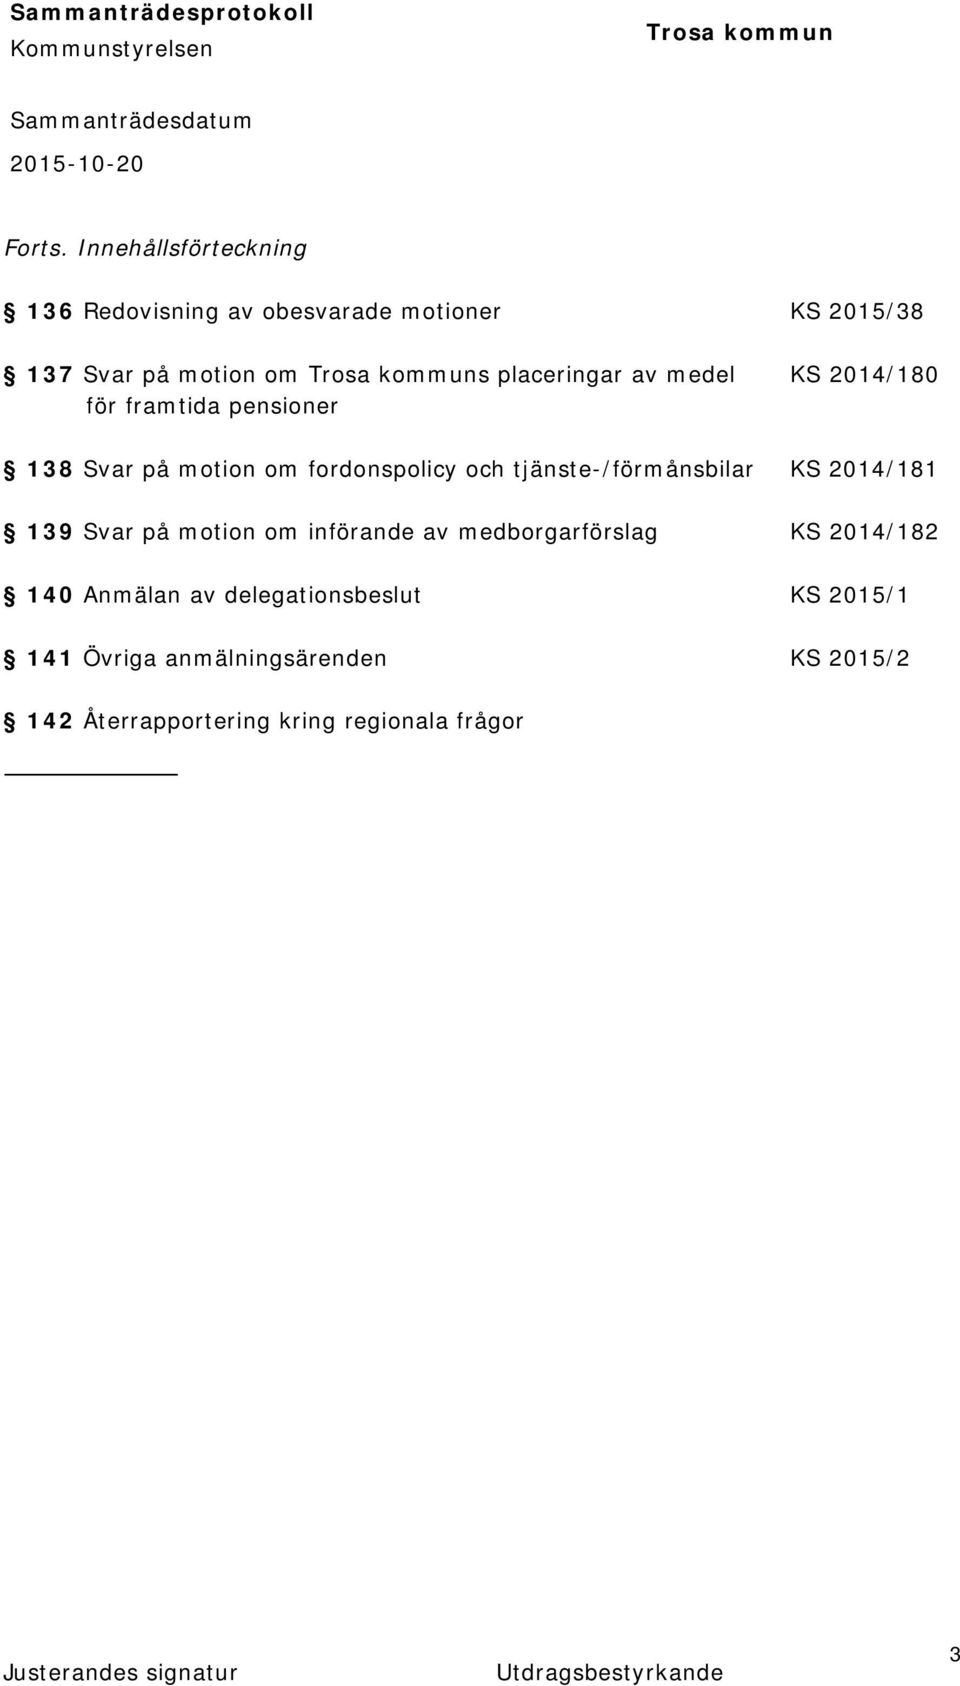 placeringar av medel KS 2014/180 för framtida pensioner 138 Svar på motion om fordonspolicy och